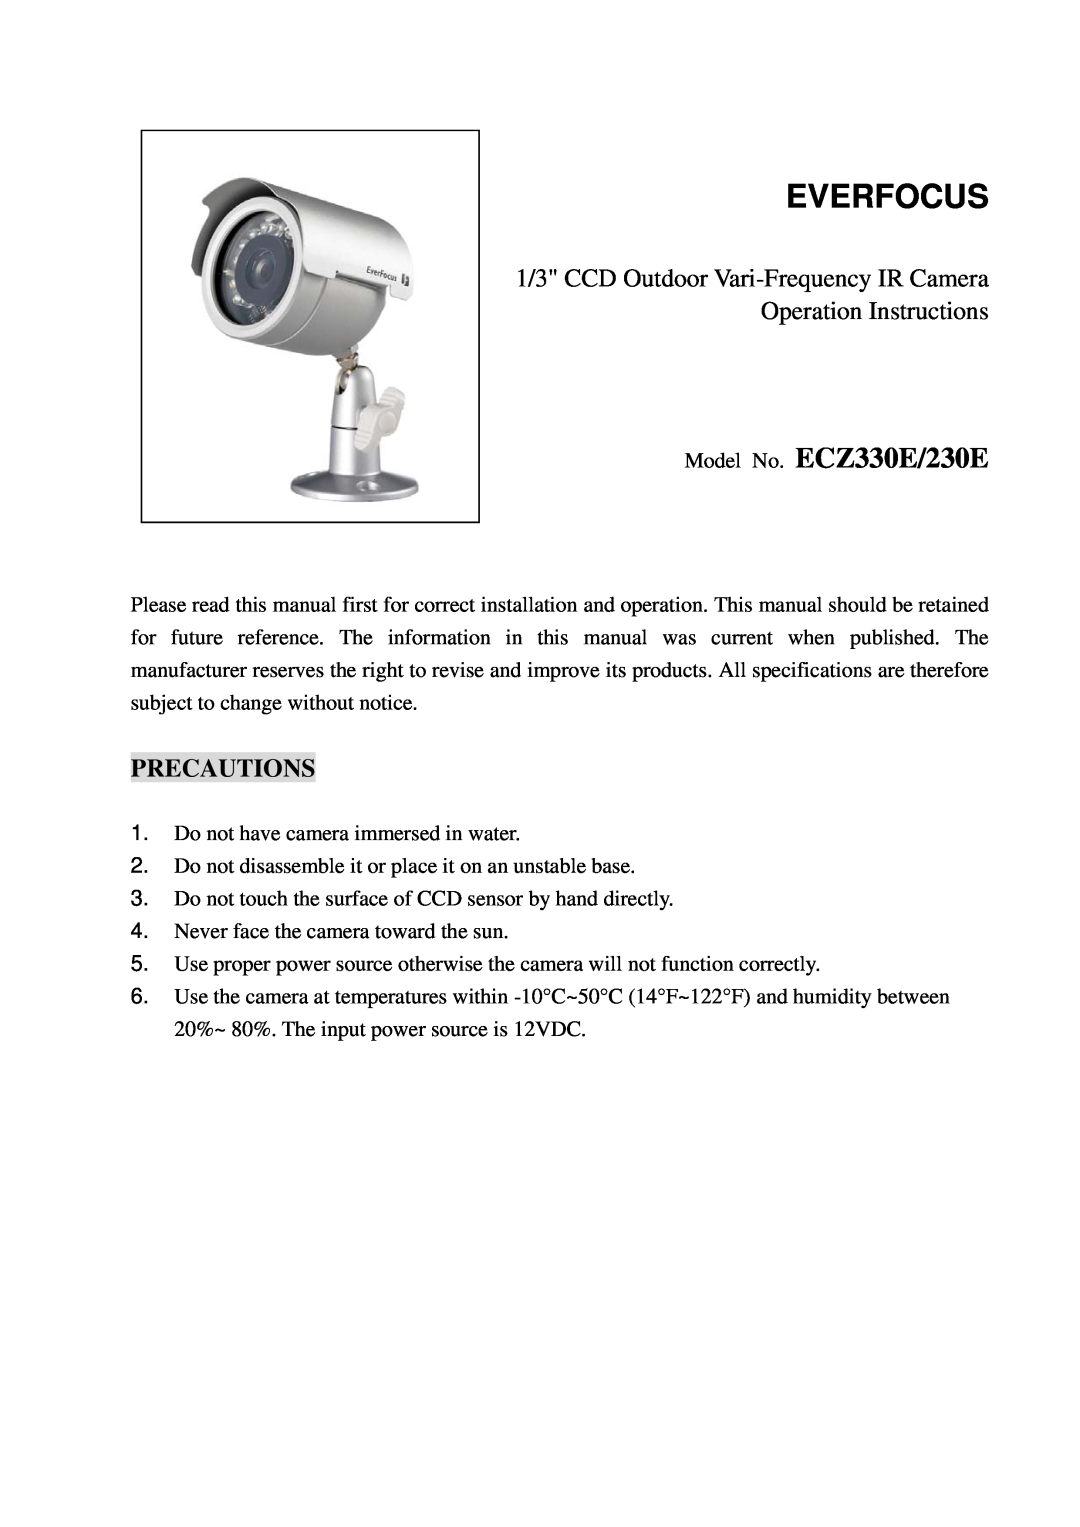 EverFocus ECZ230E specifications Precautions, Everfocus, Model No. ECZ330E/230E 